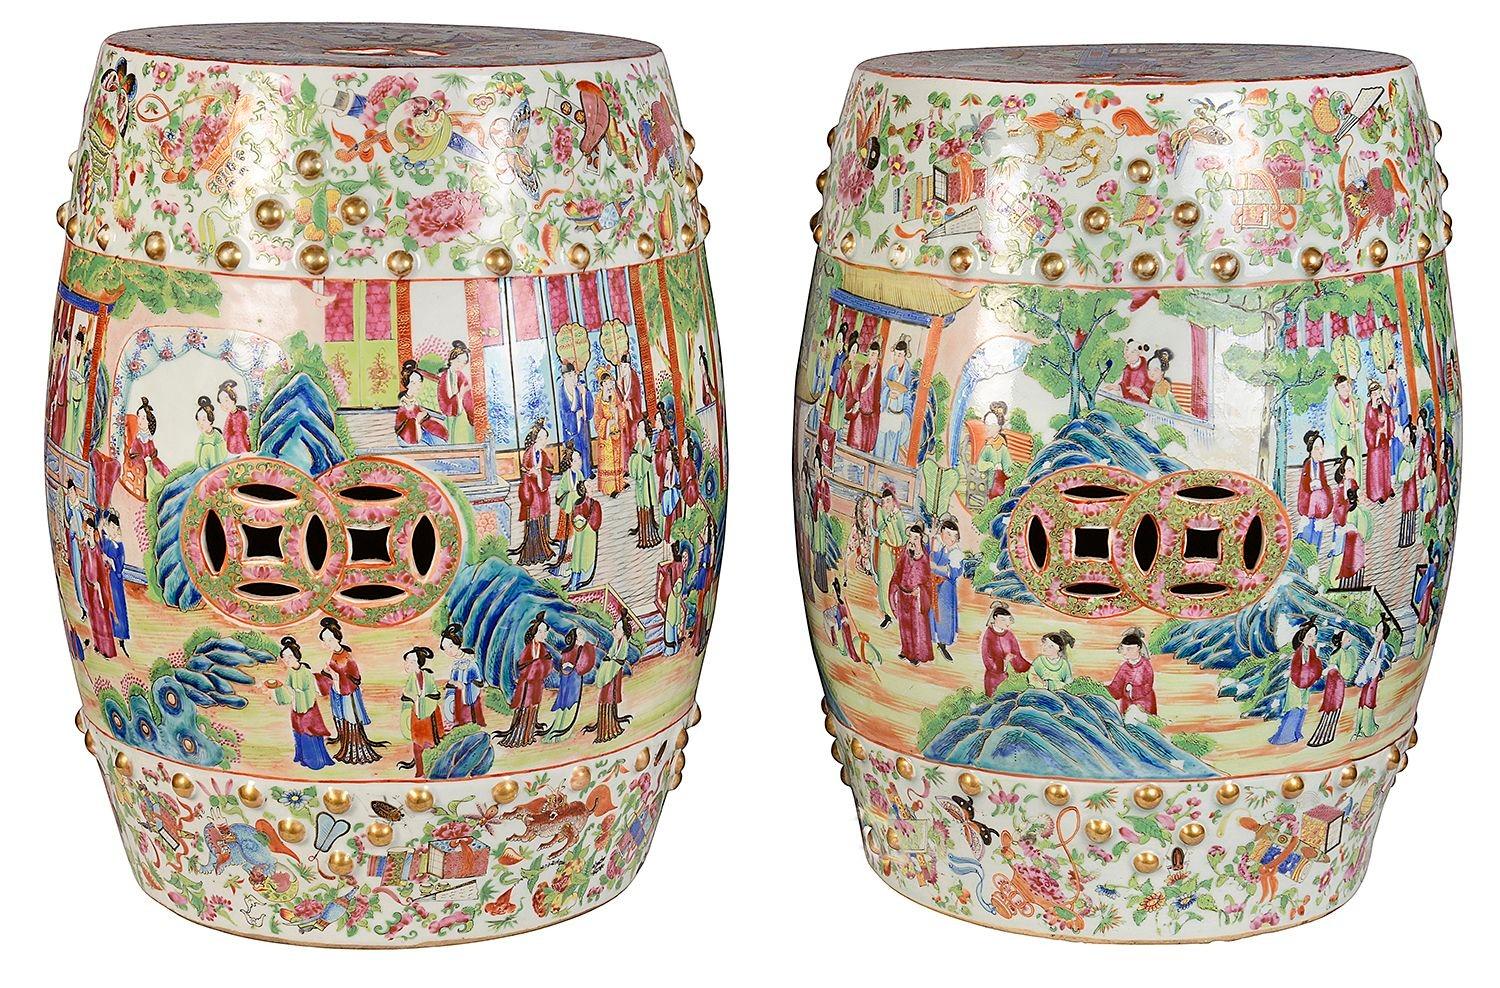 Eine wunderbare Qualität Paar des 19. Jahrhunderts chinesischen Rose Medaillon / Kantonesisch Porzellan Garten Sitze. Jede von ihnen hat eine schöne, kräftige klassische grüne und rosa Färbung. Darstellung von Szenen mit verschiedenen männlichen und